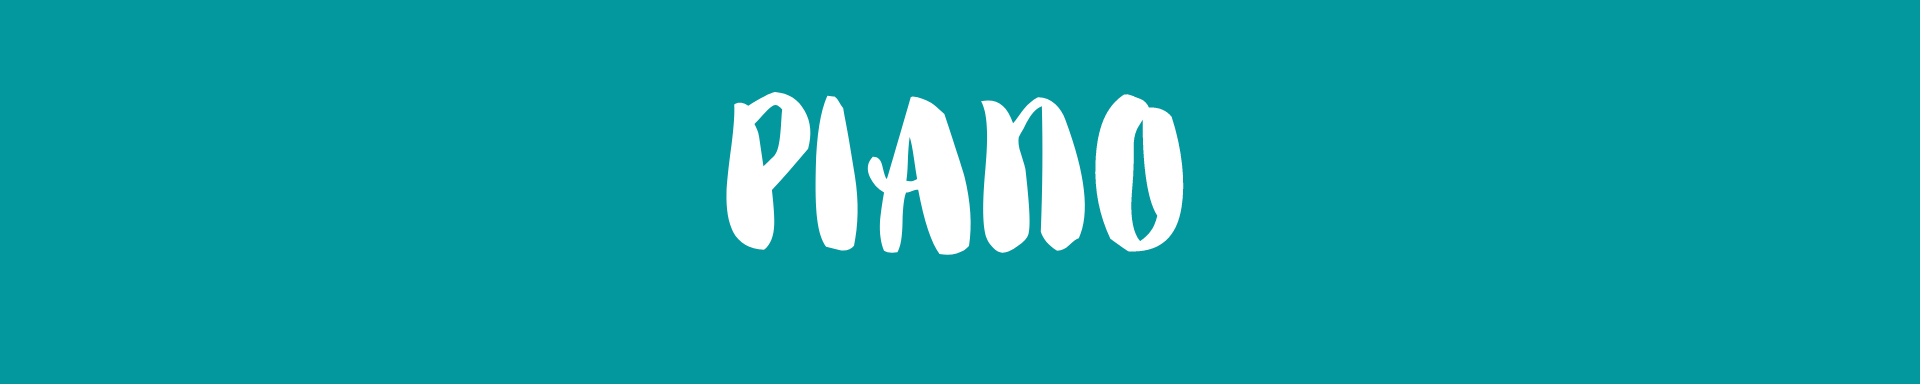 PIANO6